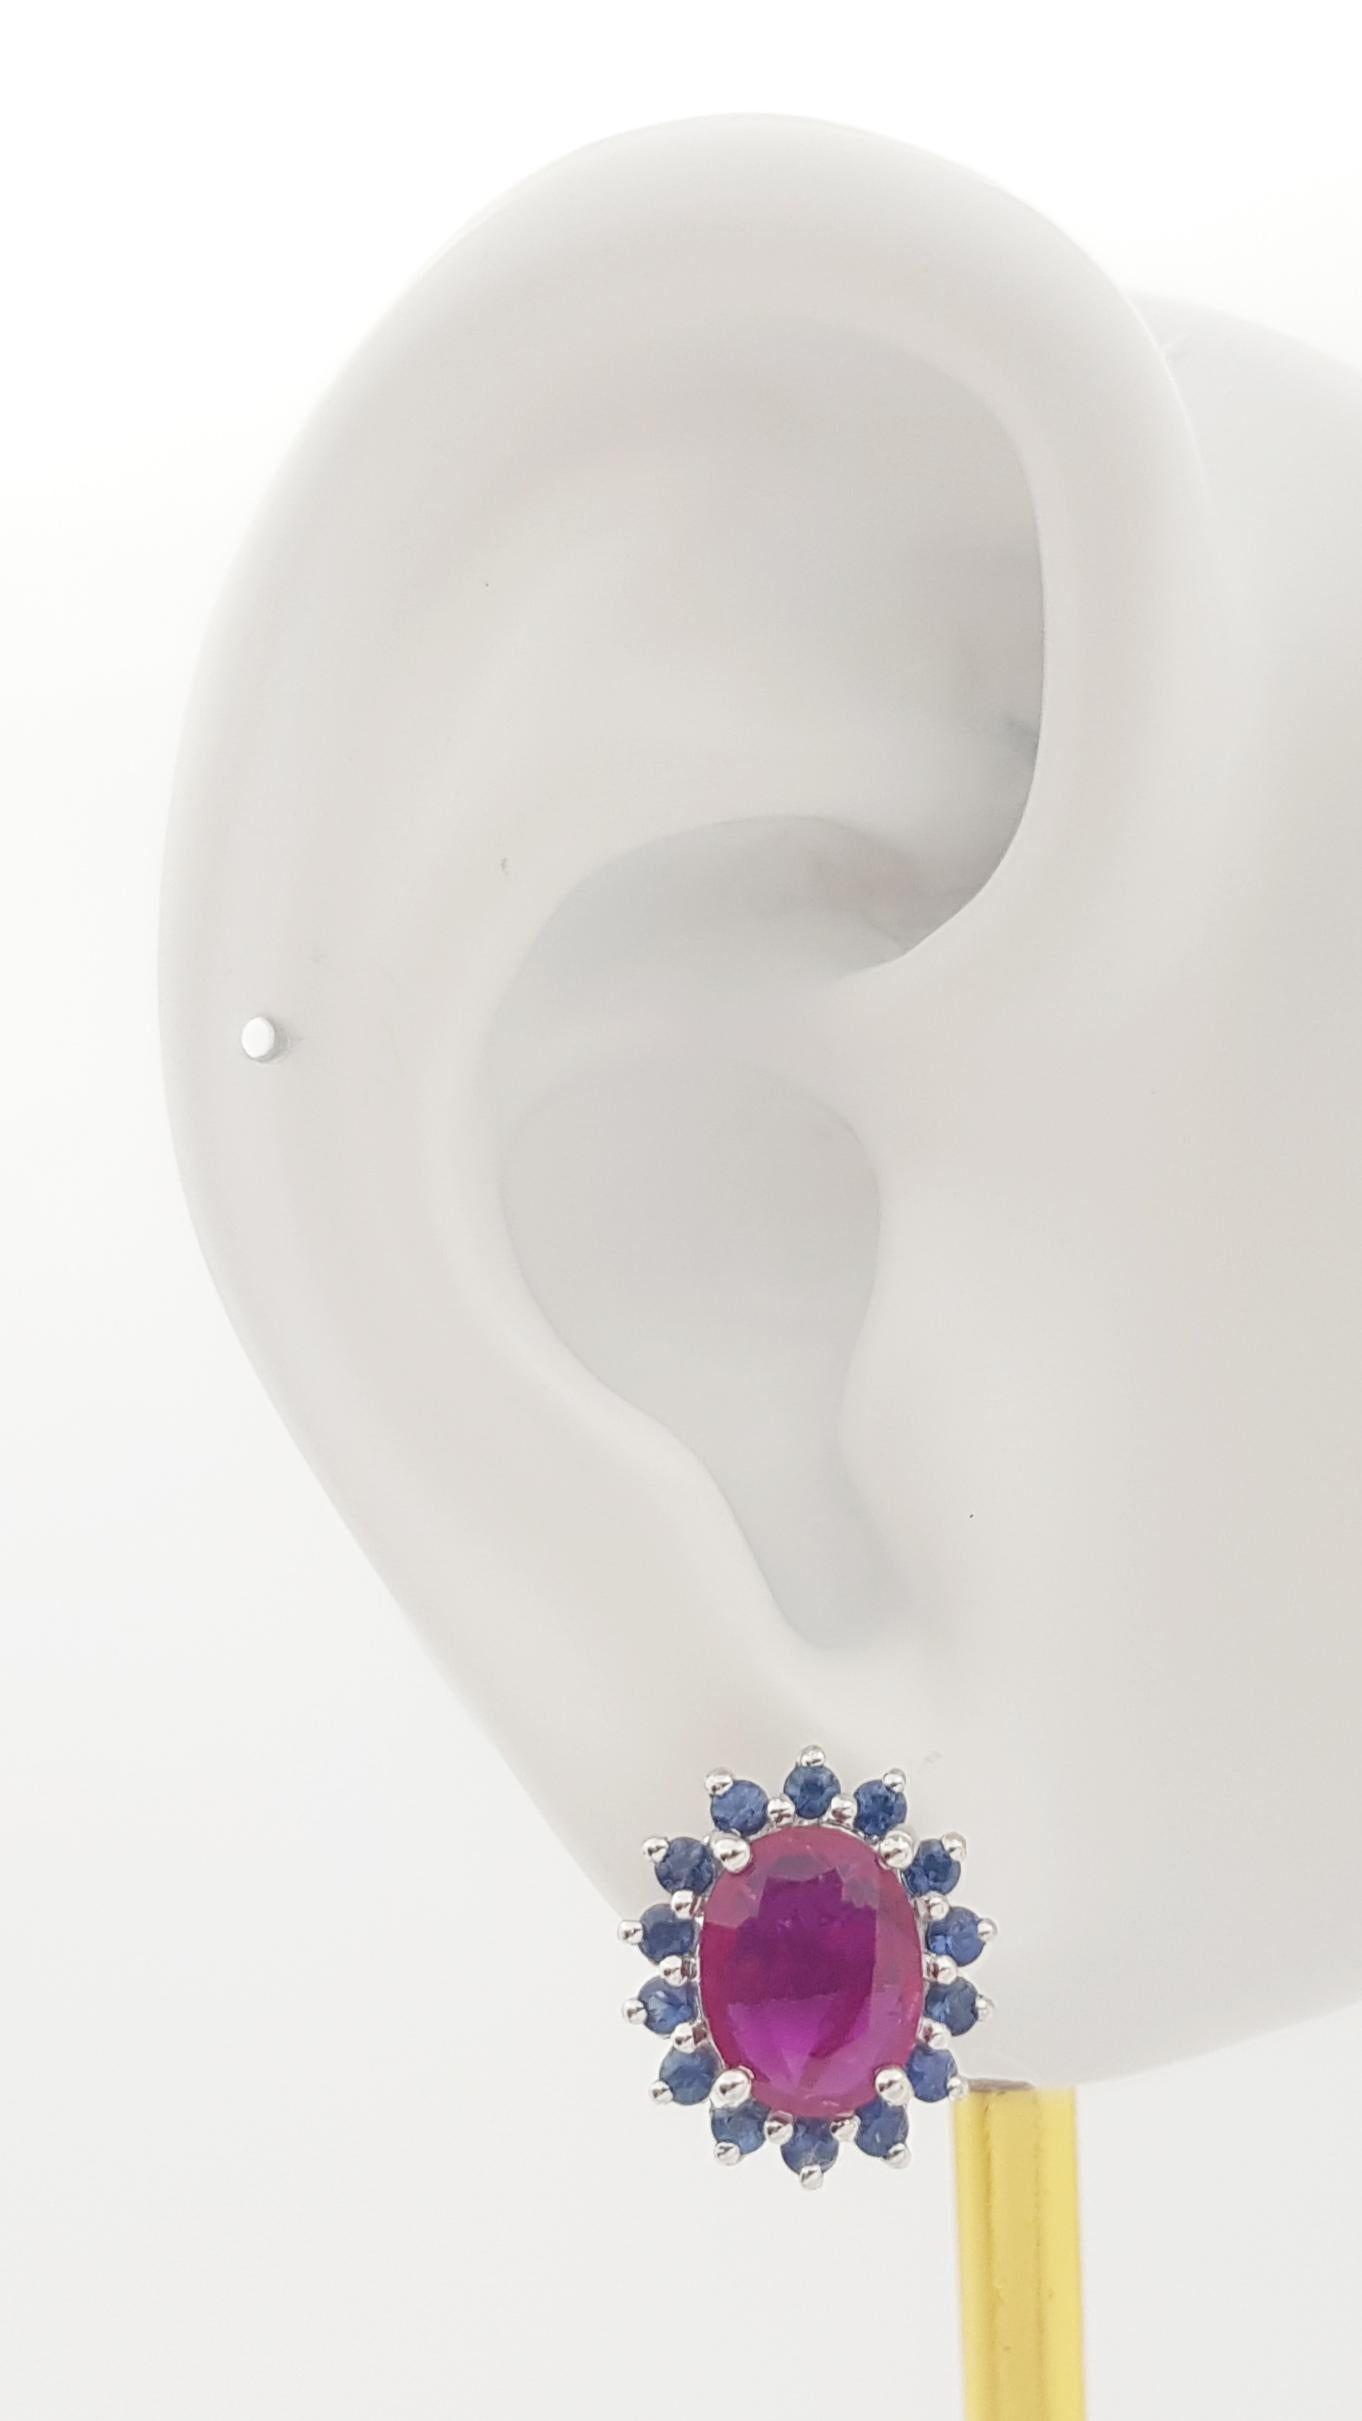 Boucles d'oreilles en or blanc 14K serties de rubis 2.74 carats et saphir bleu 0.88 carat

Largeur : 1.2 cm 
Longueur : 1.3 cm
Poids total : 6,08 grammes

